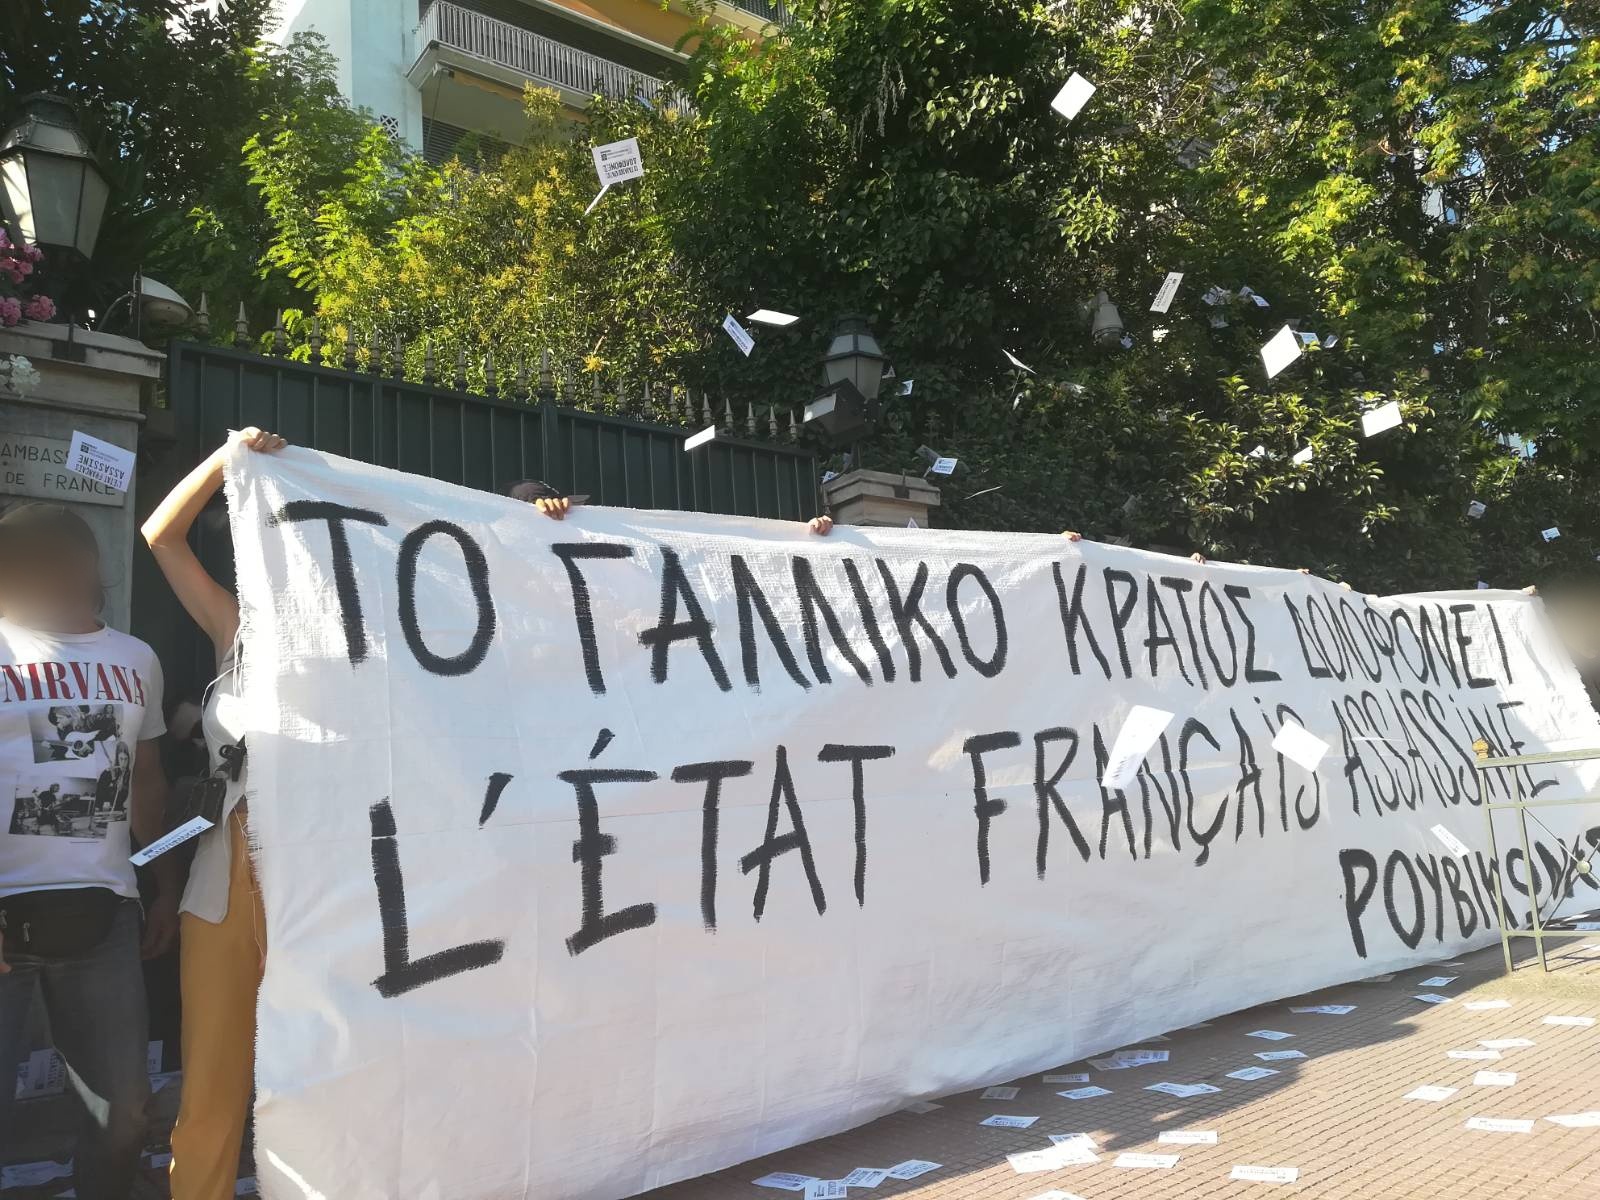 Ρουβίκωνας: Συγκέντρωση έξω από τη Γαλλική πρεσβεία &προσαγωγές